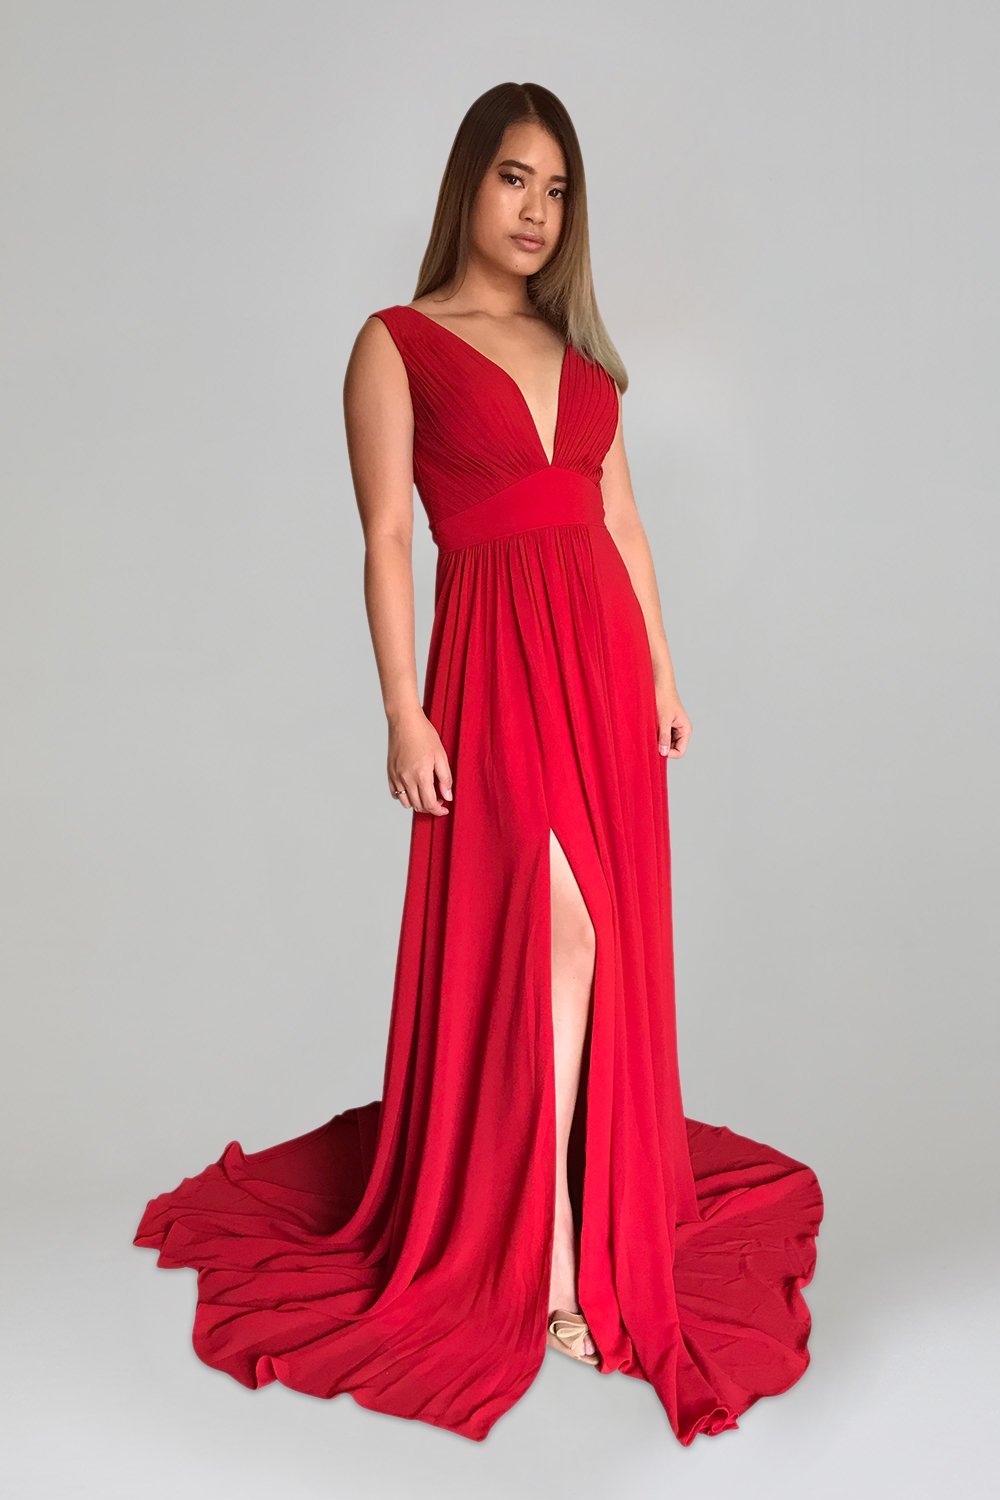 custom made flowy red chiffon bridesmaid formal ball dresses perth australia envious bridal & formal